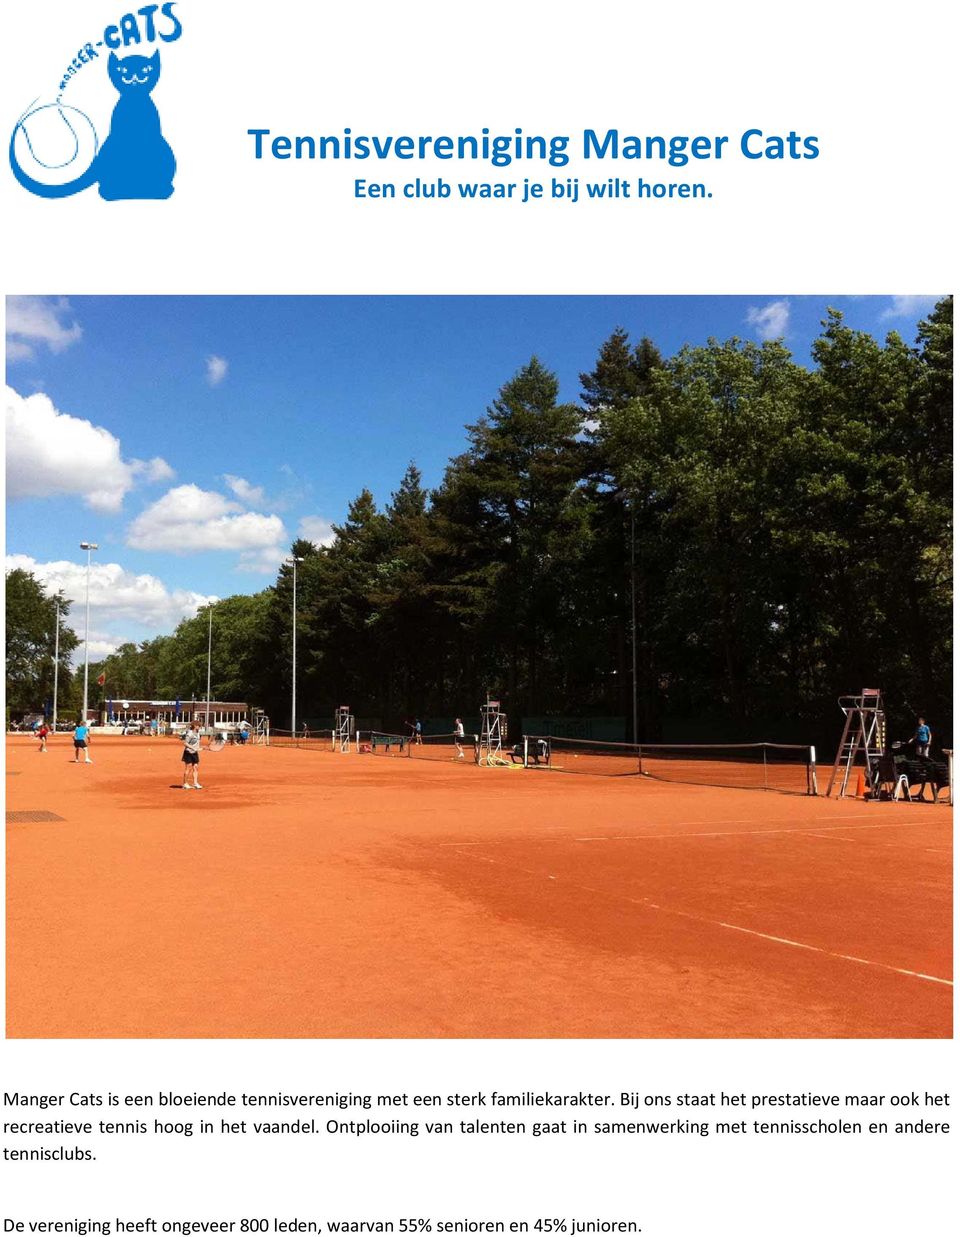 Bij ons staat het prestatieve maar ook het recreatieve tennis hoog in het vaandel.